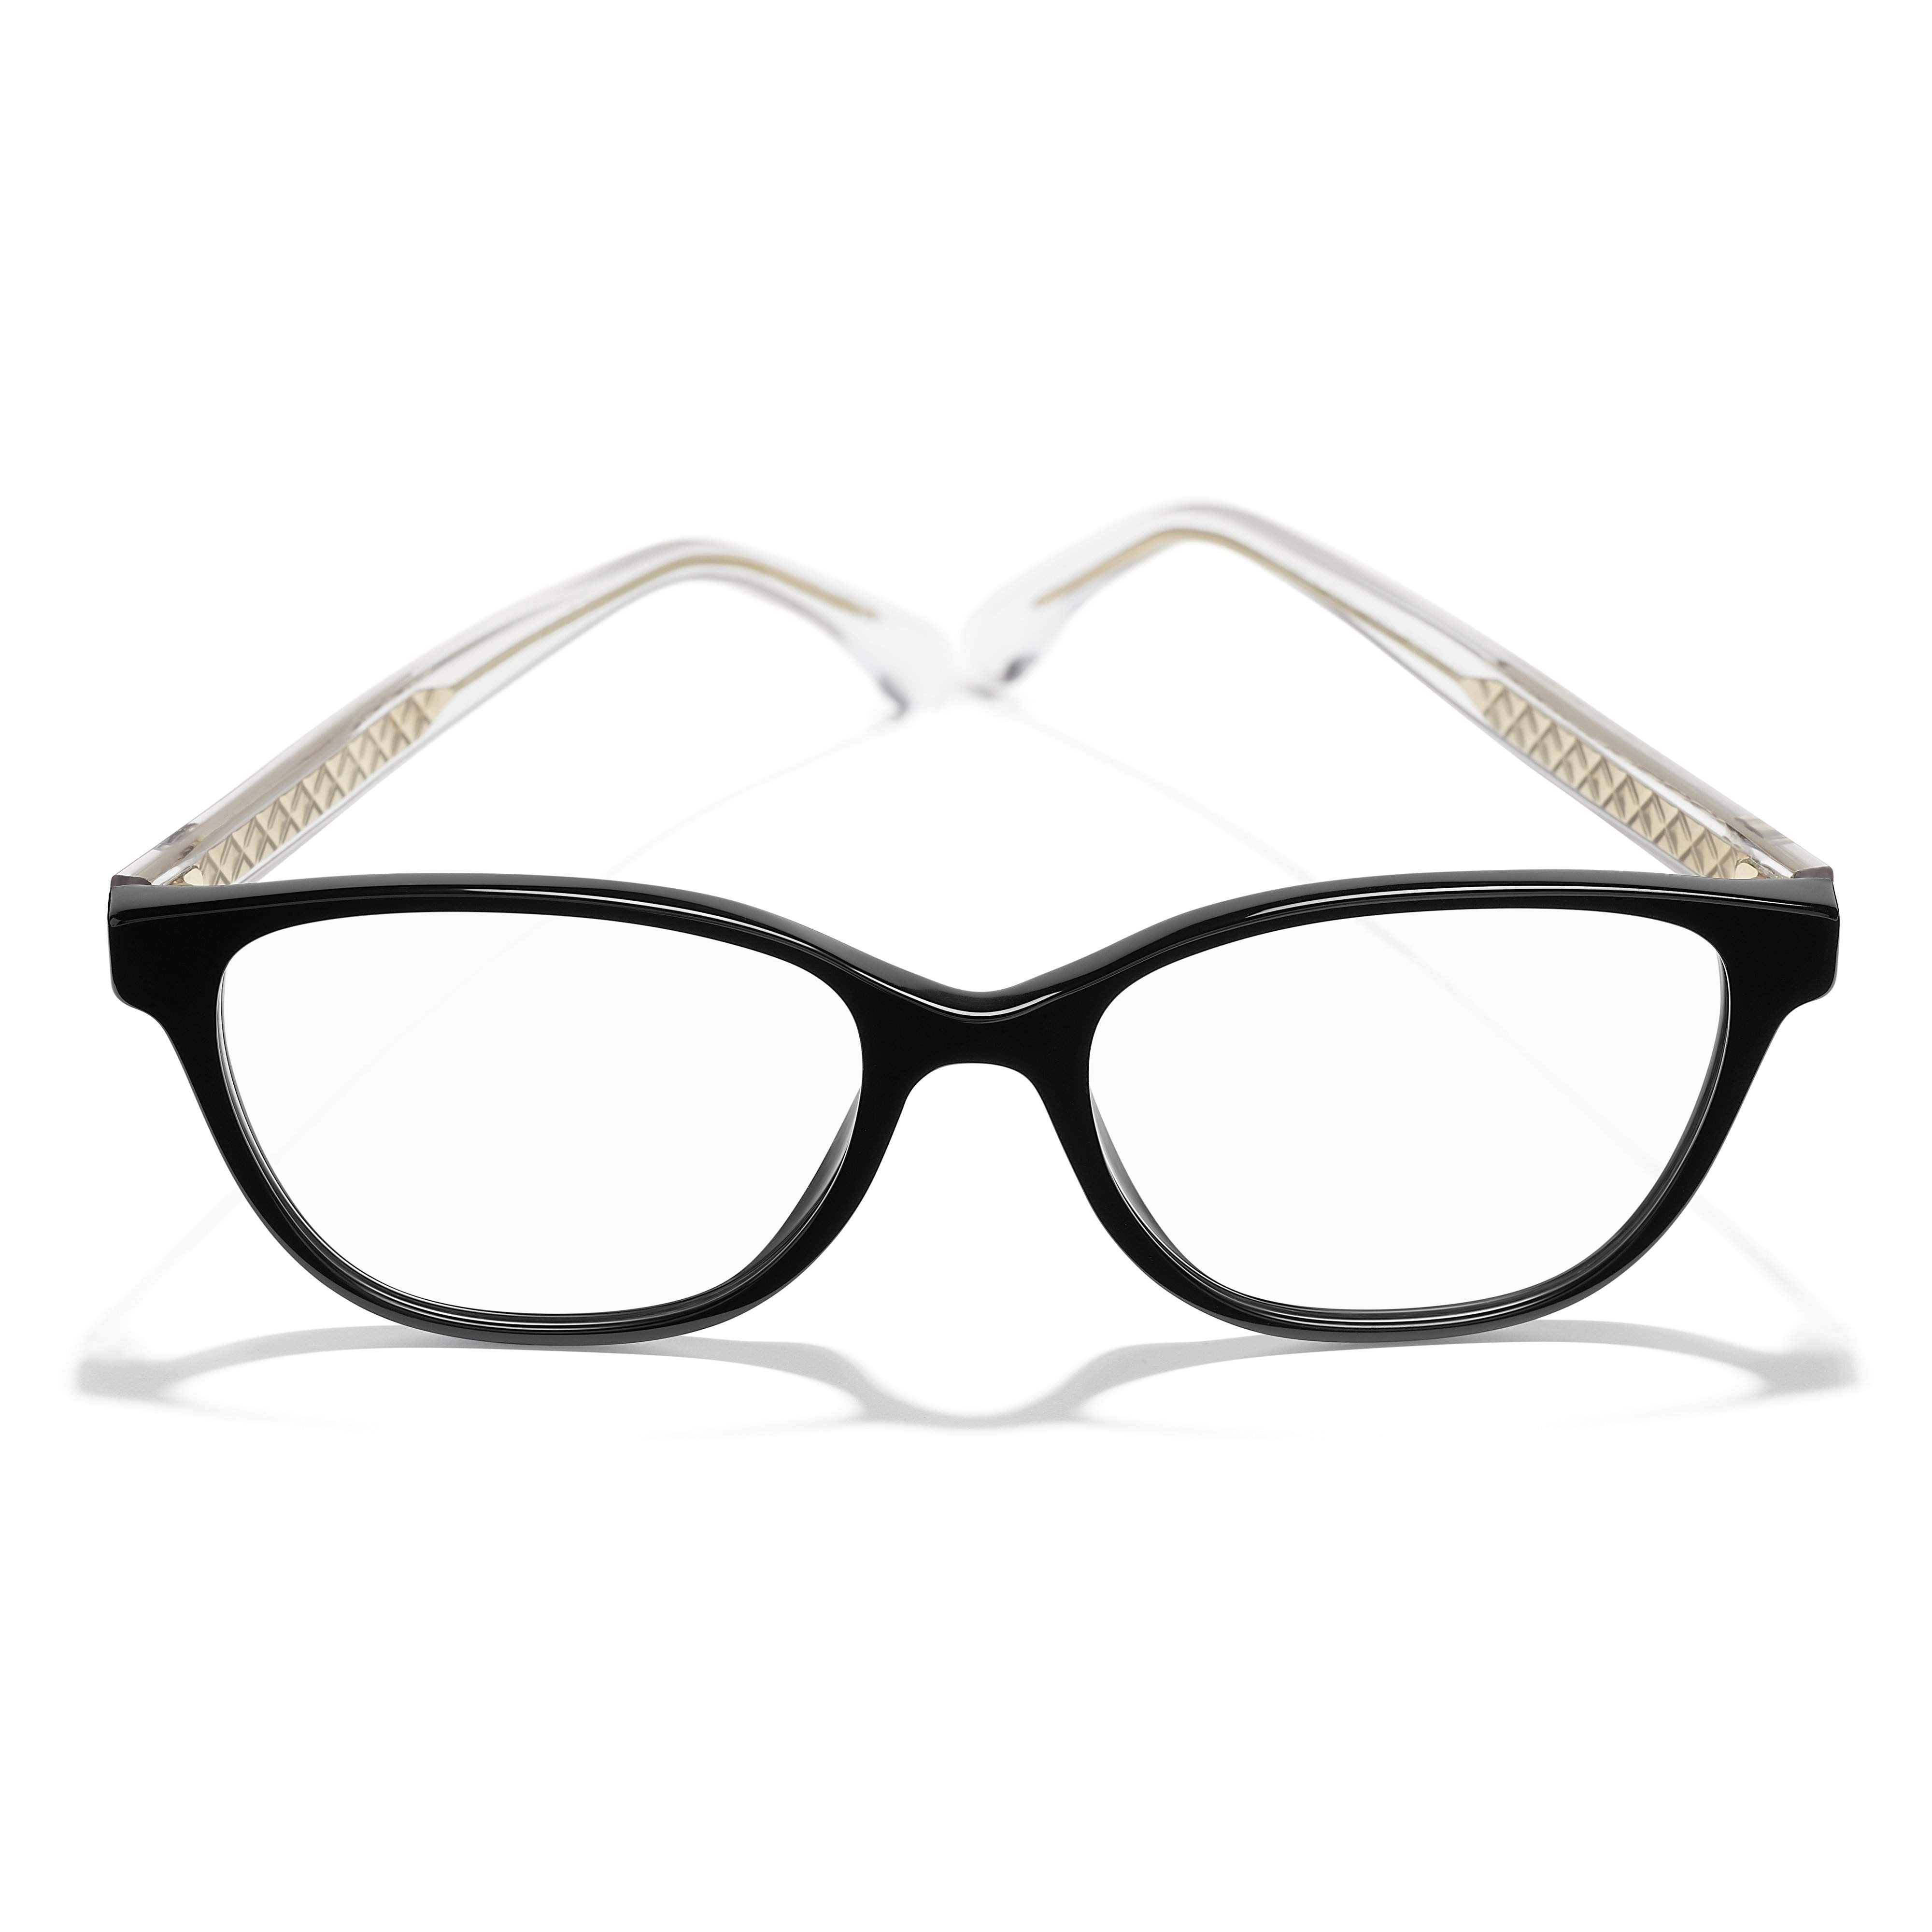 chanel eyeglasses frames women new